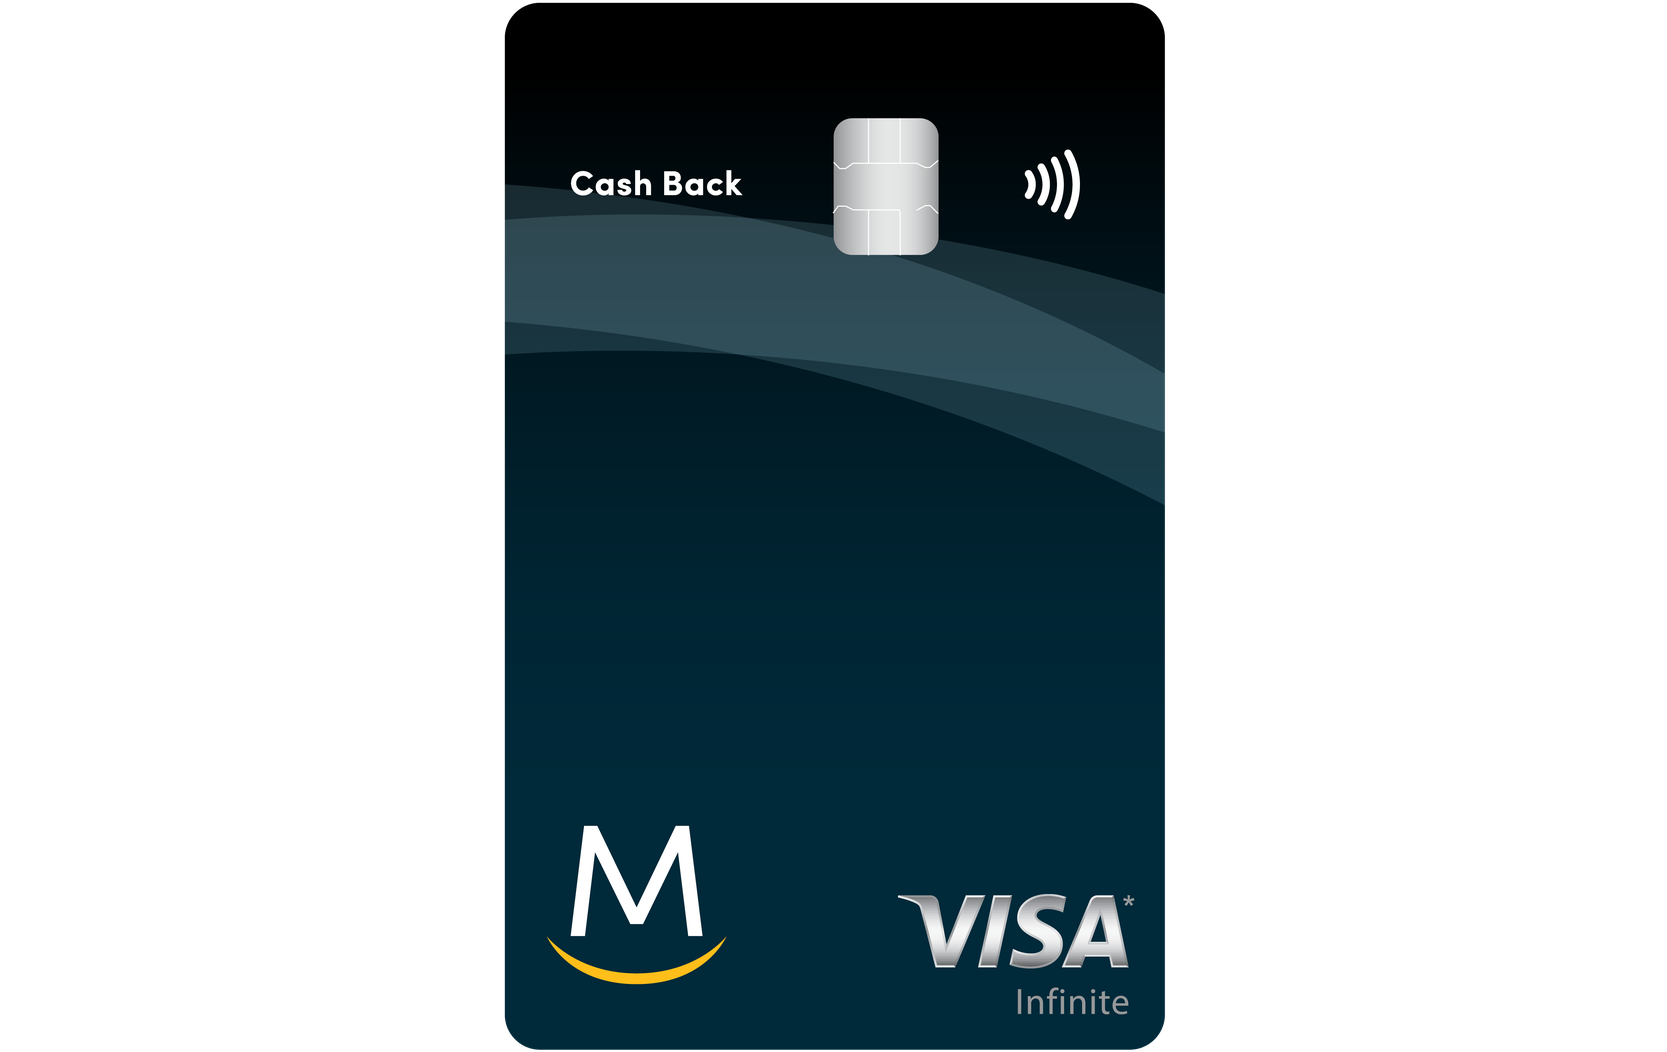 Meridian Visa Infinite Cash Back Card